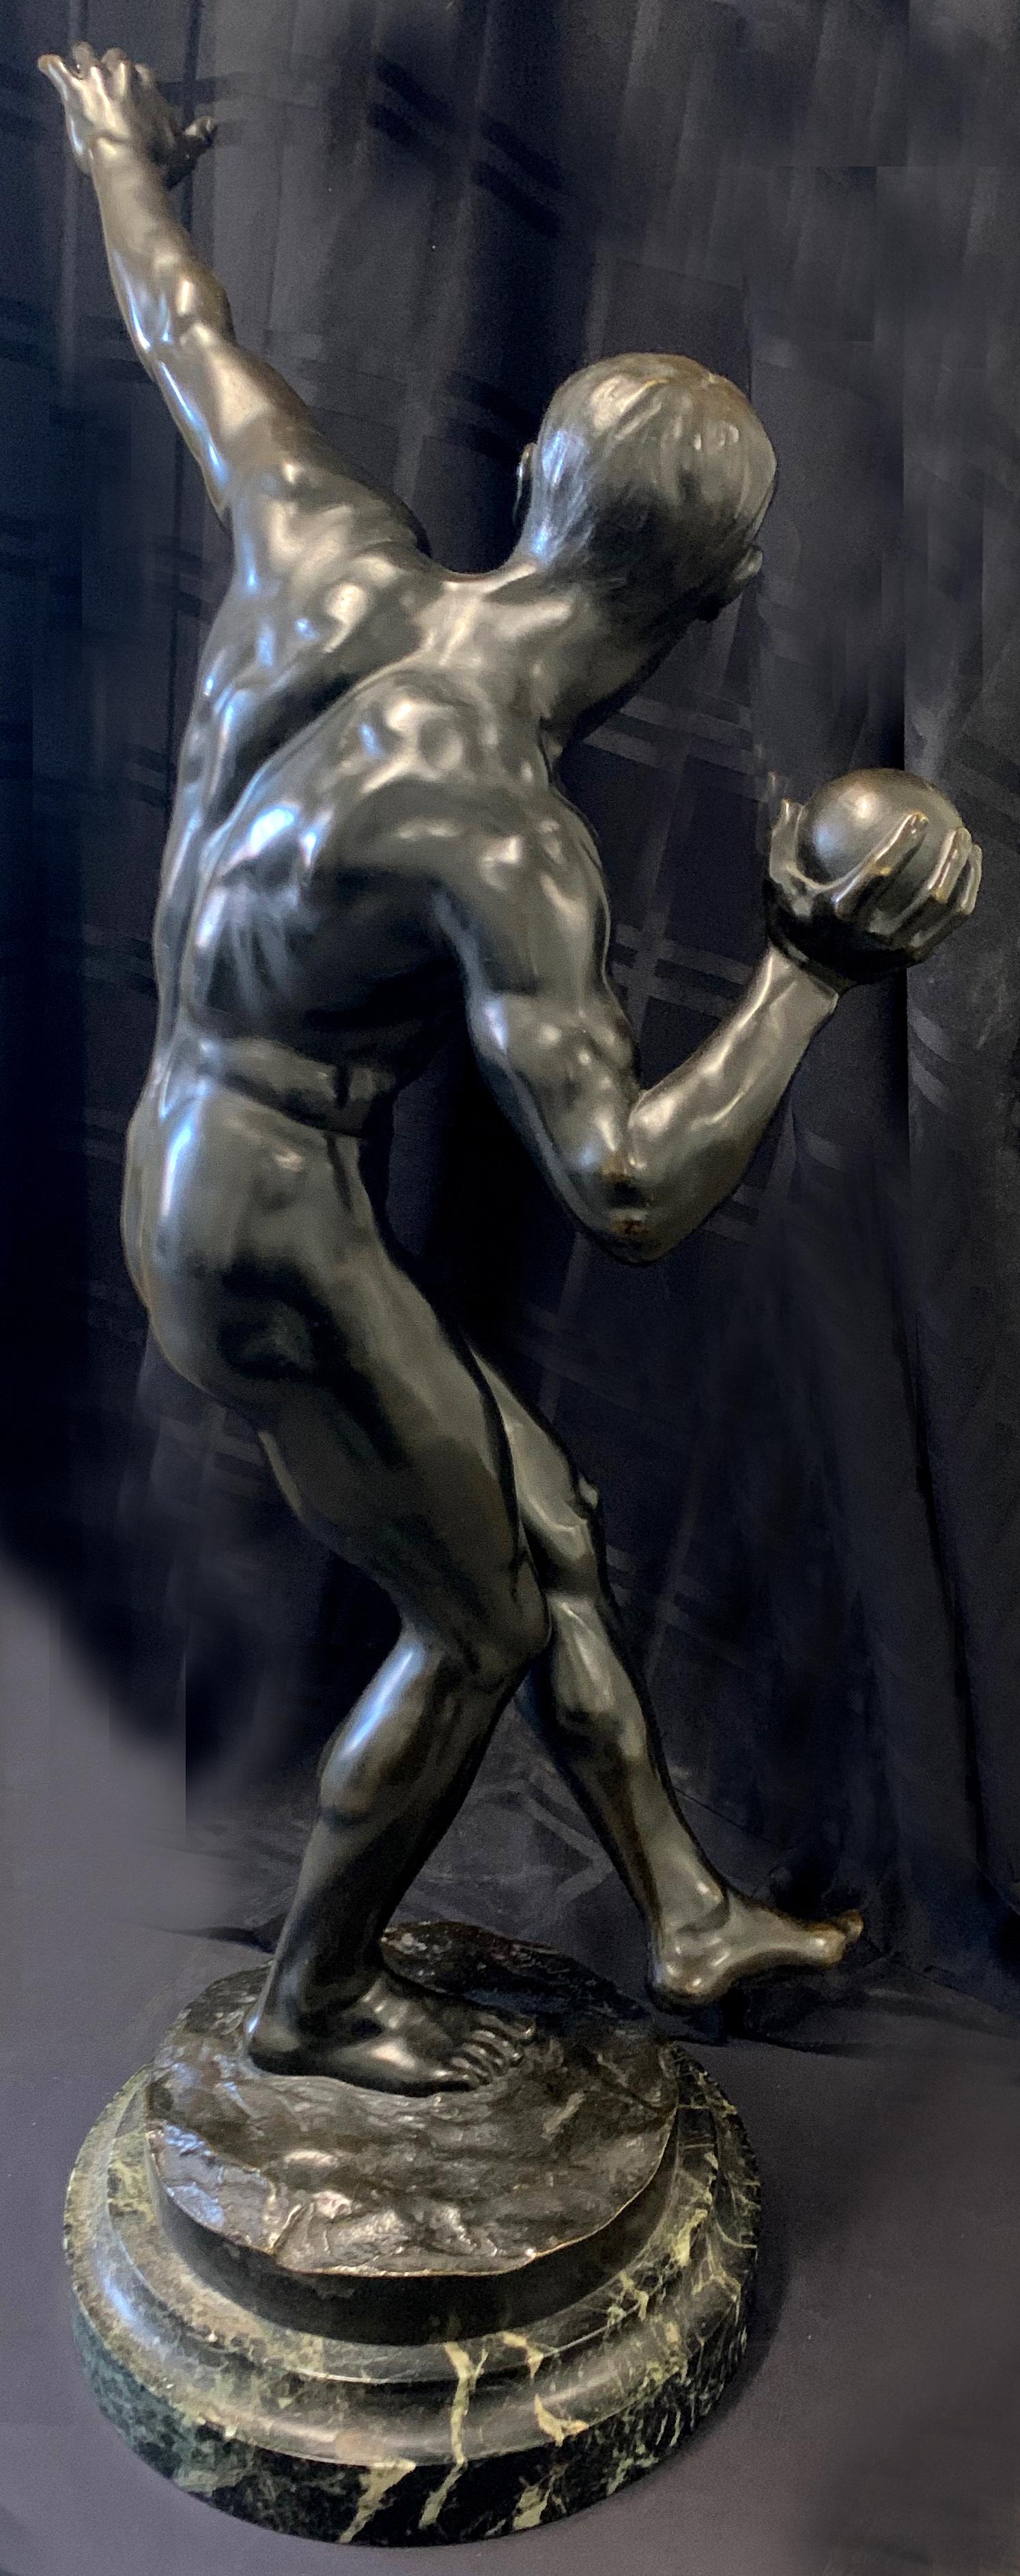 Le seul exemple que nous ayons jamais vu, cette grande sculpture en bronze (33 pouces de haut) représentant un athlète en excellente condition physique sur le point de tirer, a été réalisée par Louis Marie Jules Condit au début du 20e siècle.